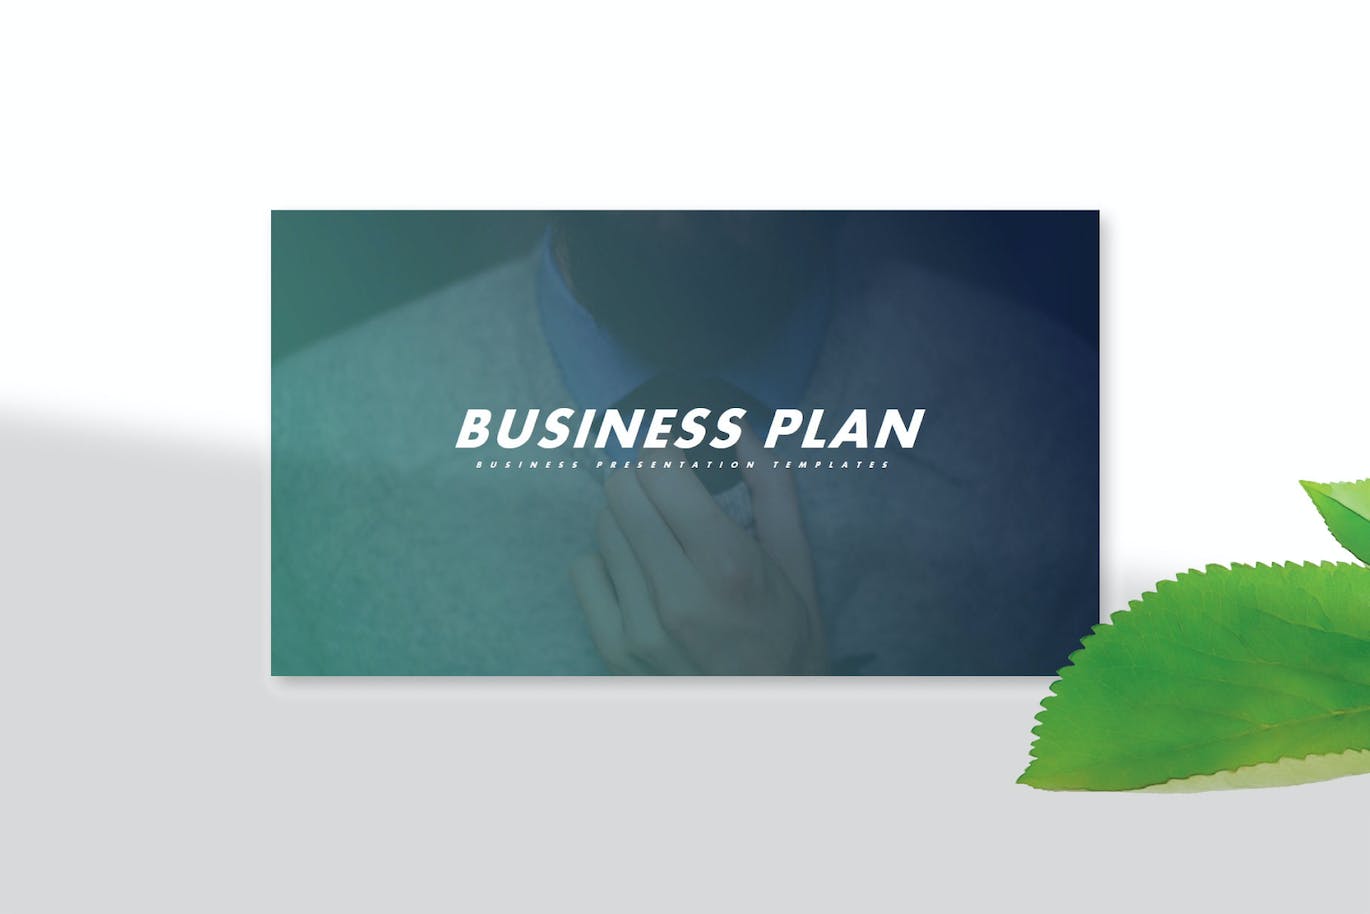 商业计划多用途PPT幻灯片模板下载 Business Plan – PowerPoint Template 幻灯图表 第6张